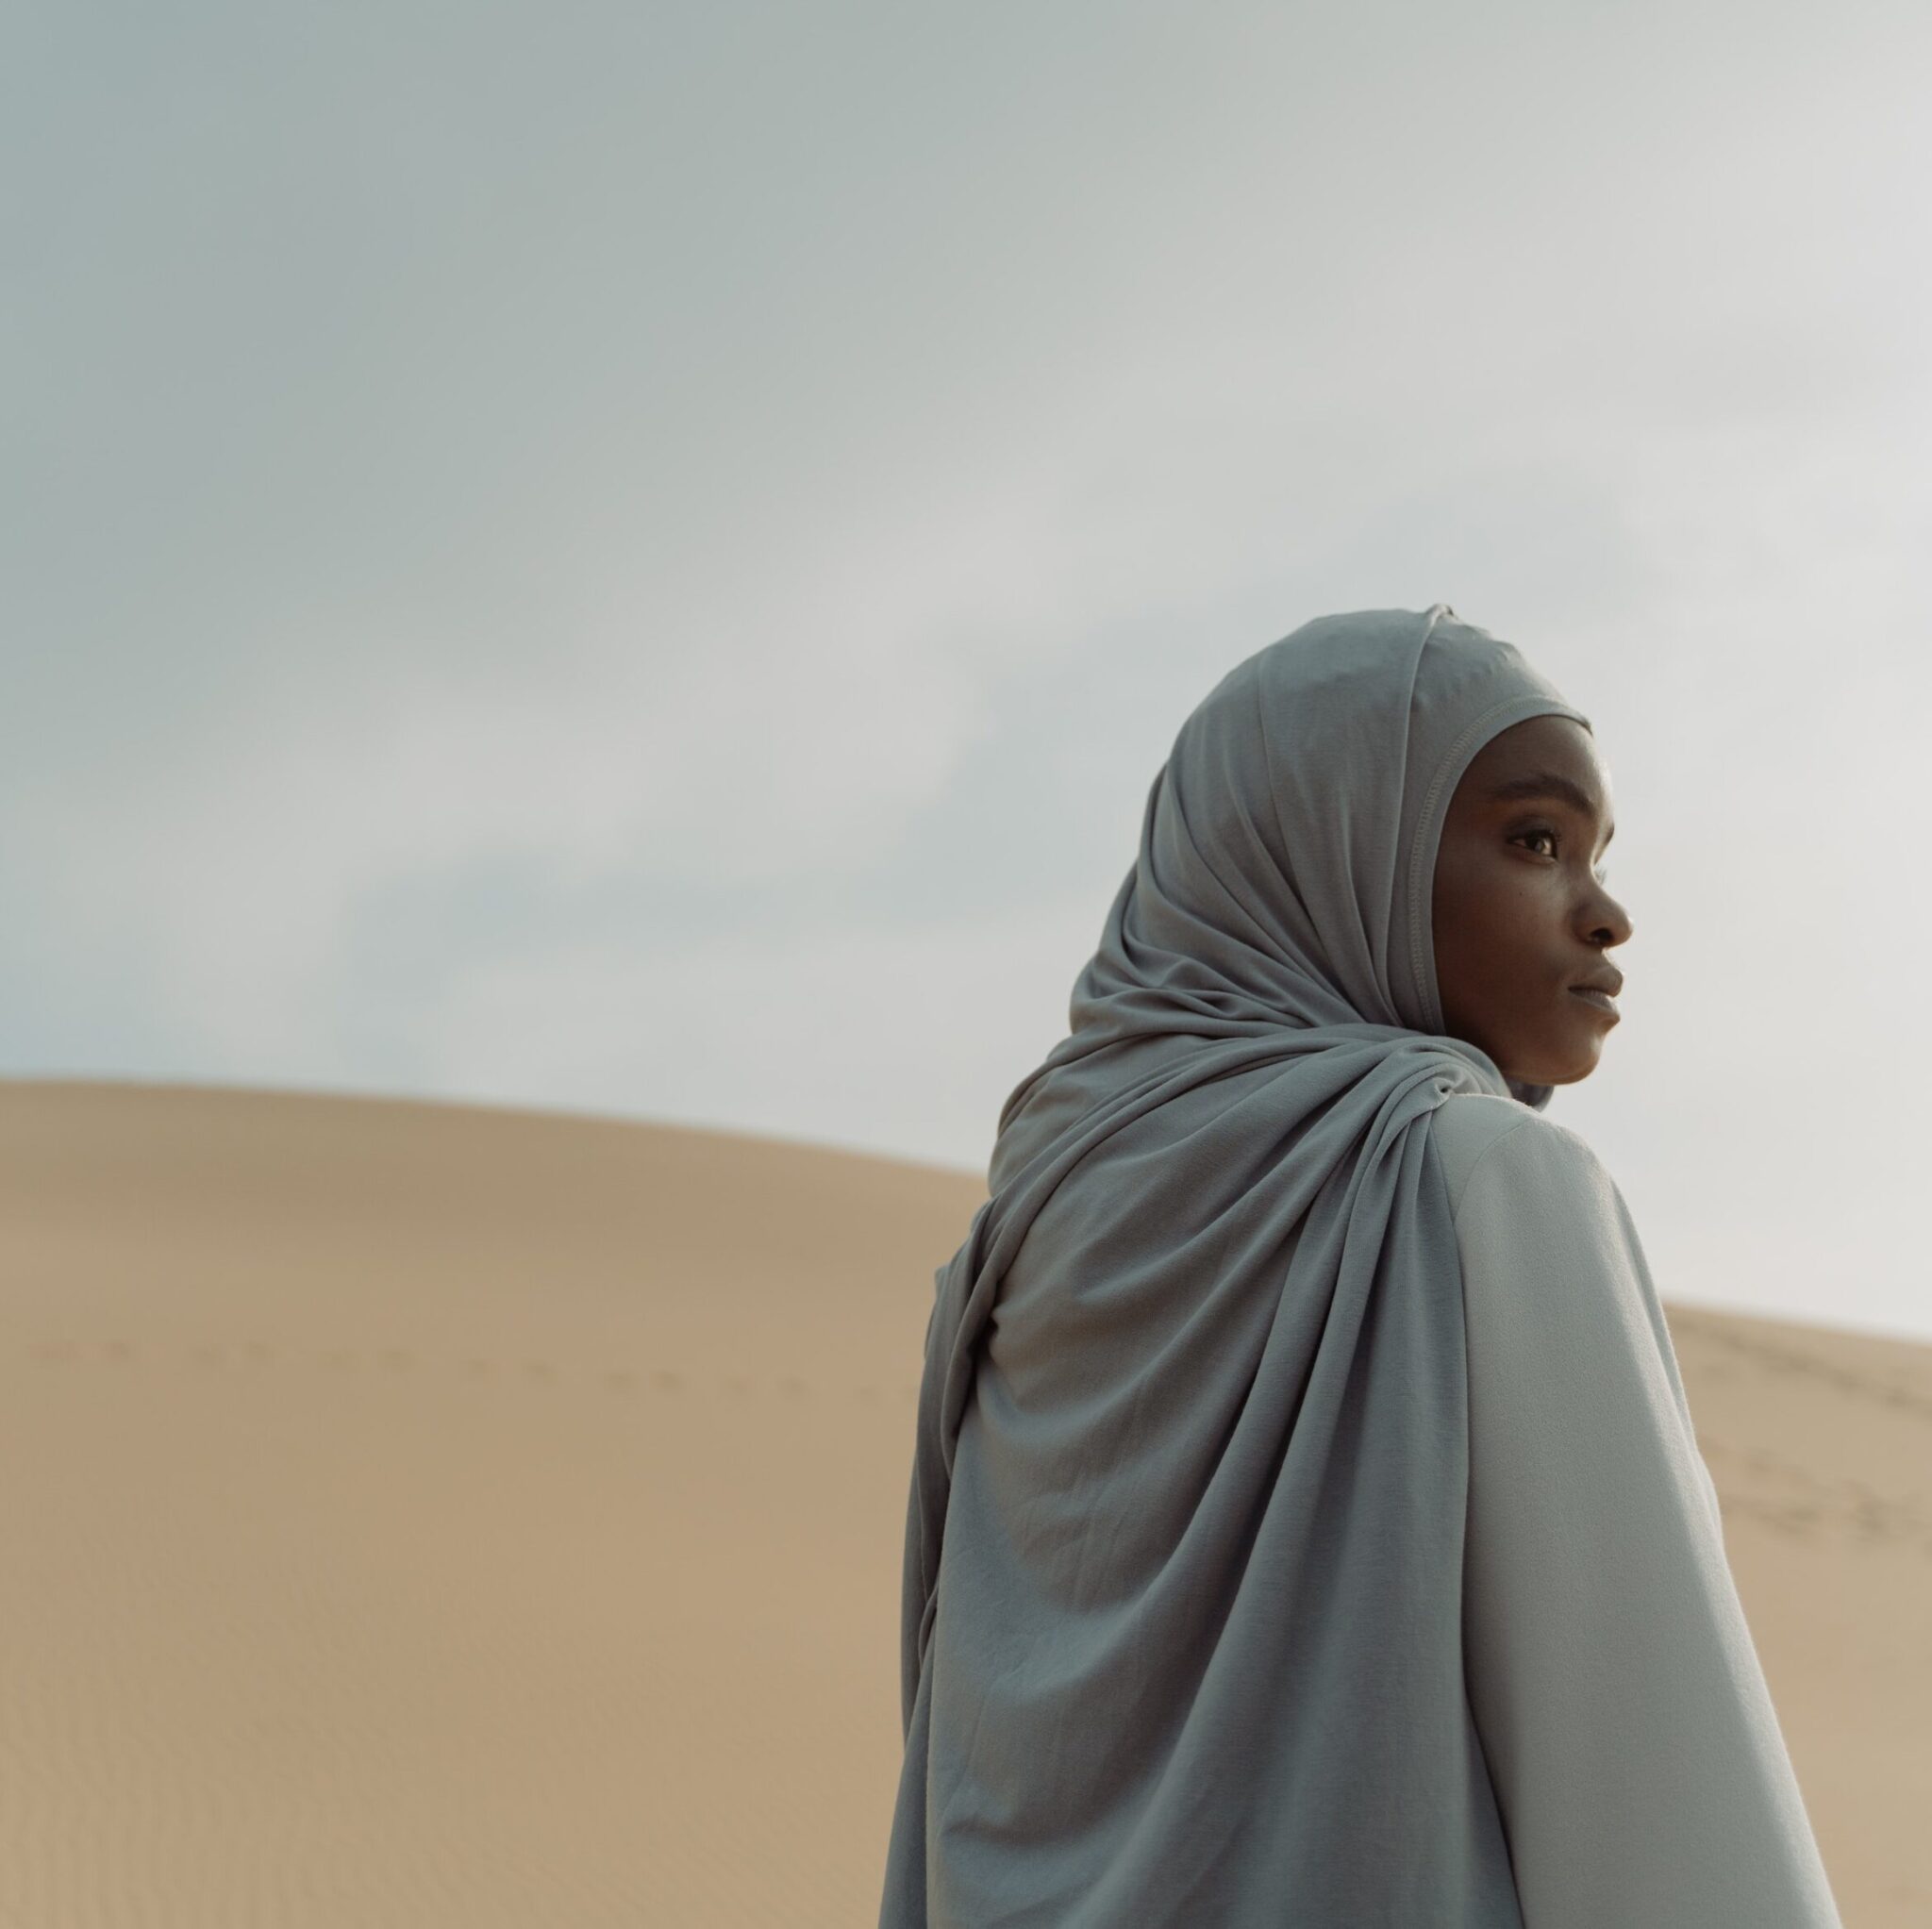 O Uso do Hijab e a Intolerância: Devo Deixar de Usá-lo?